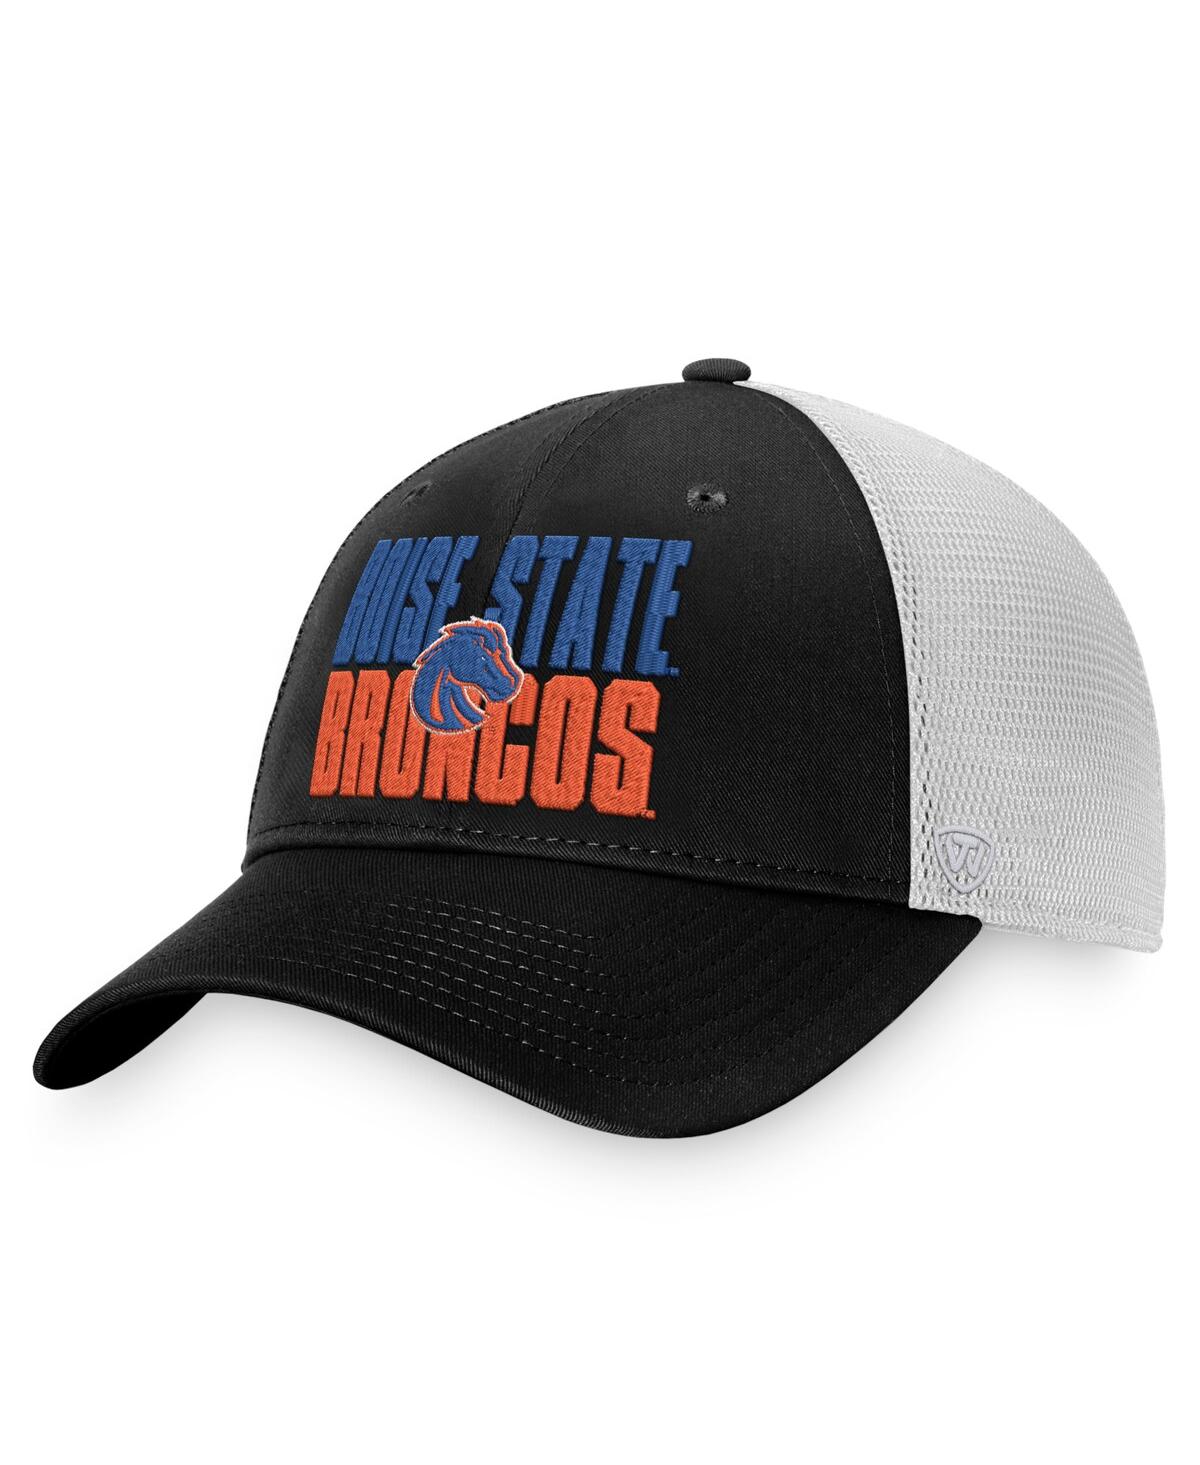 Shop Top Of The World Men's  Black, White Boise State Broncos Stockpile Trucker Snapback Hat In Black,white